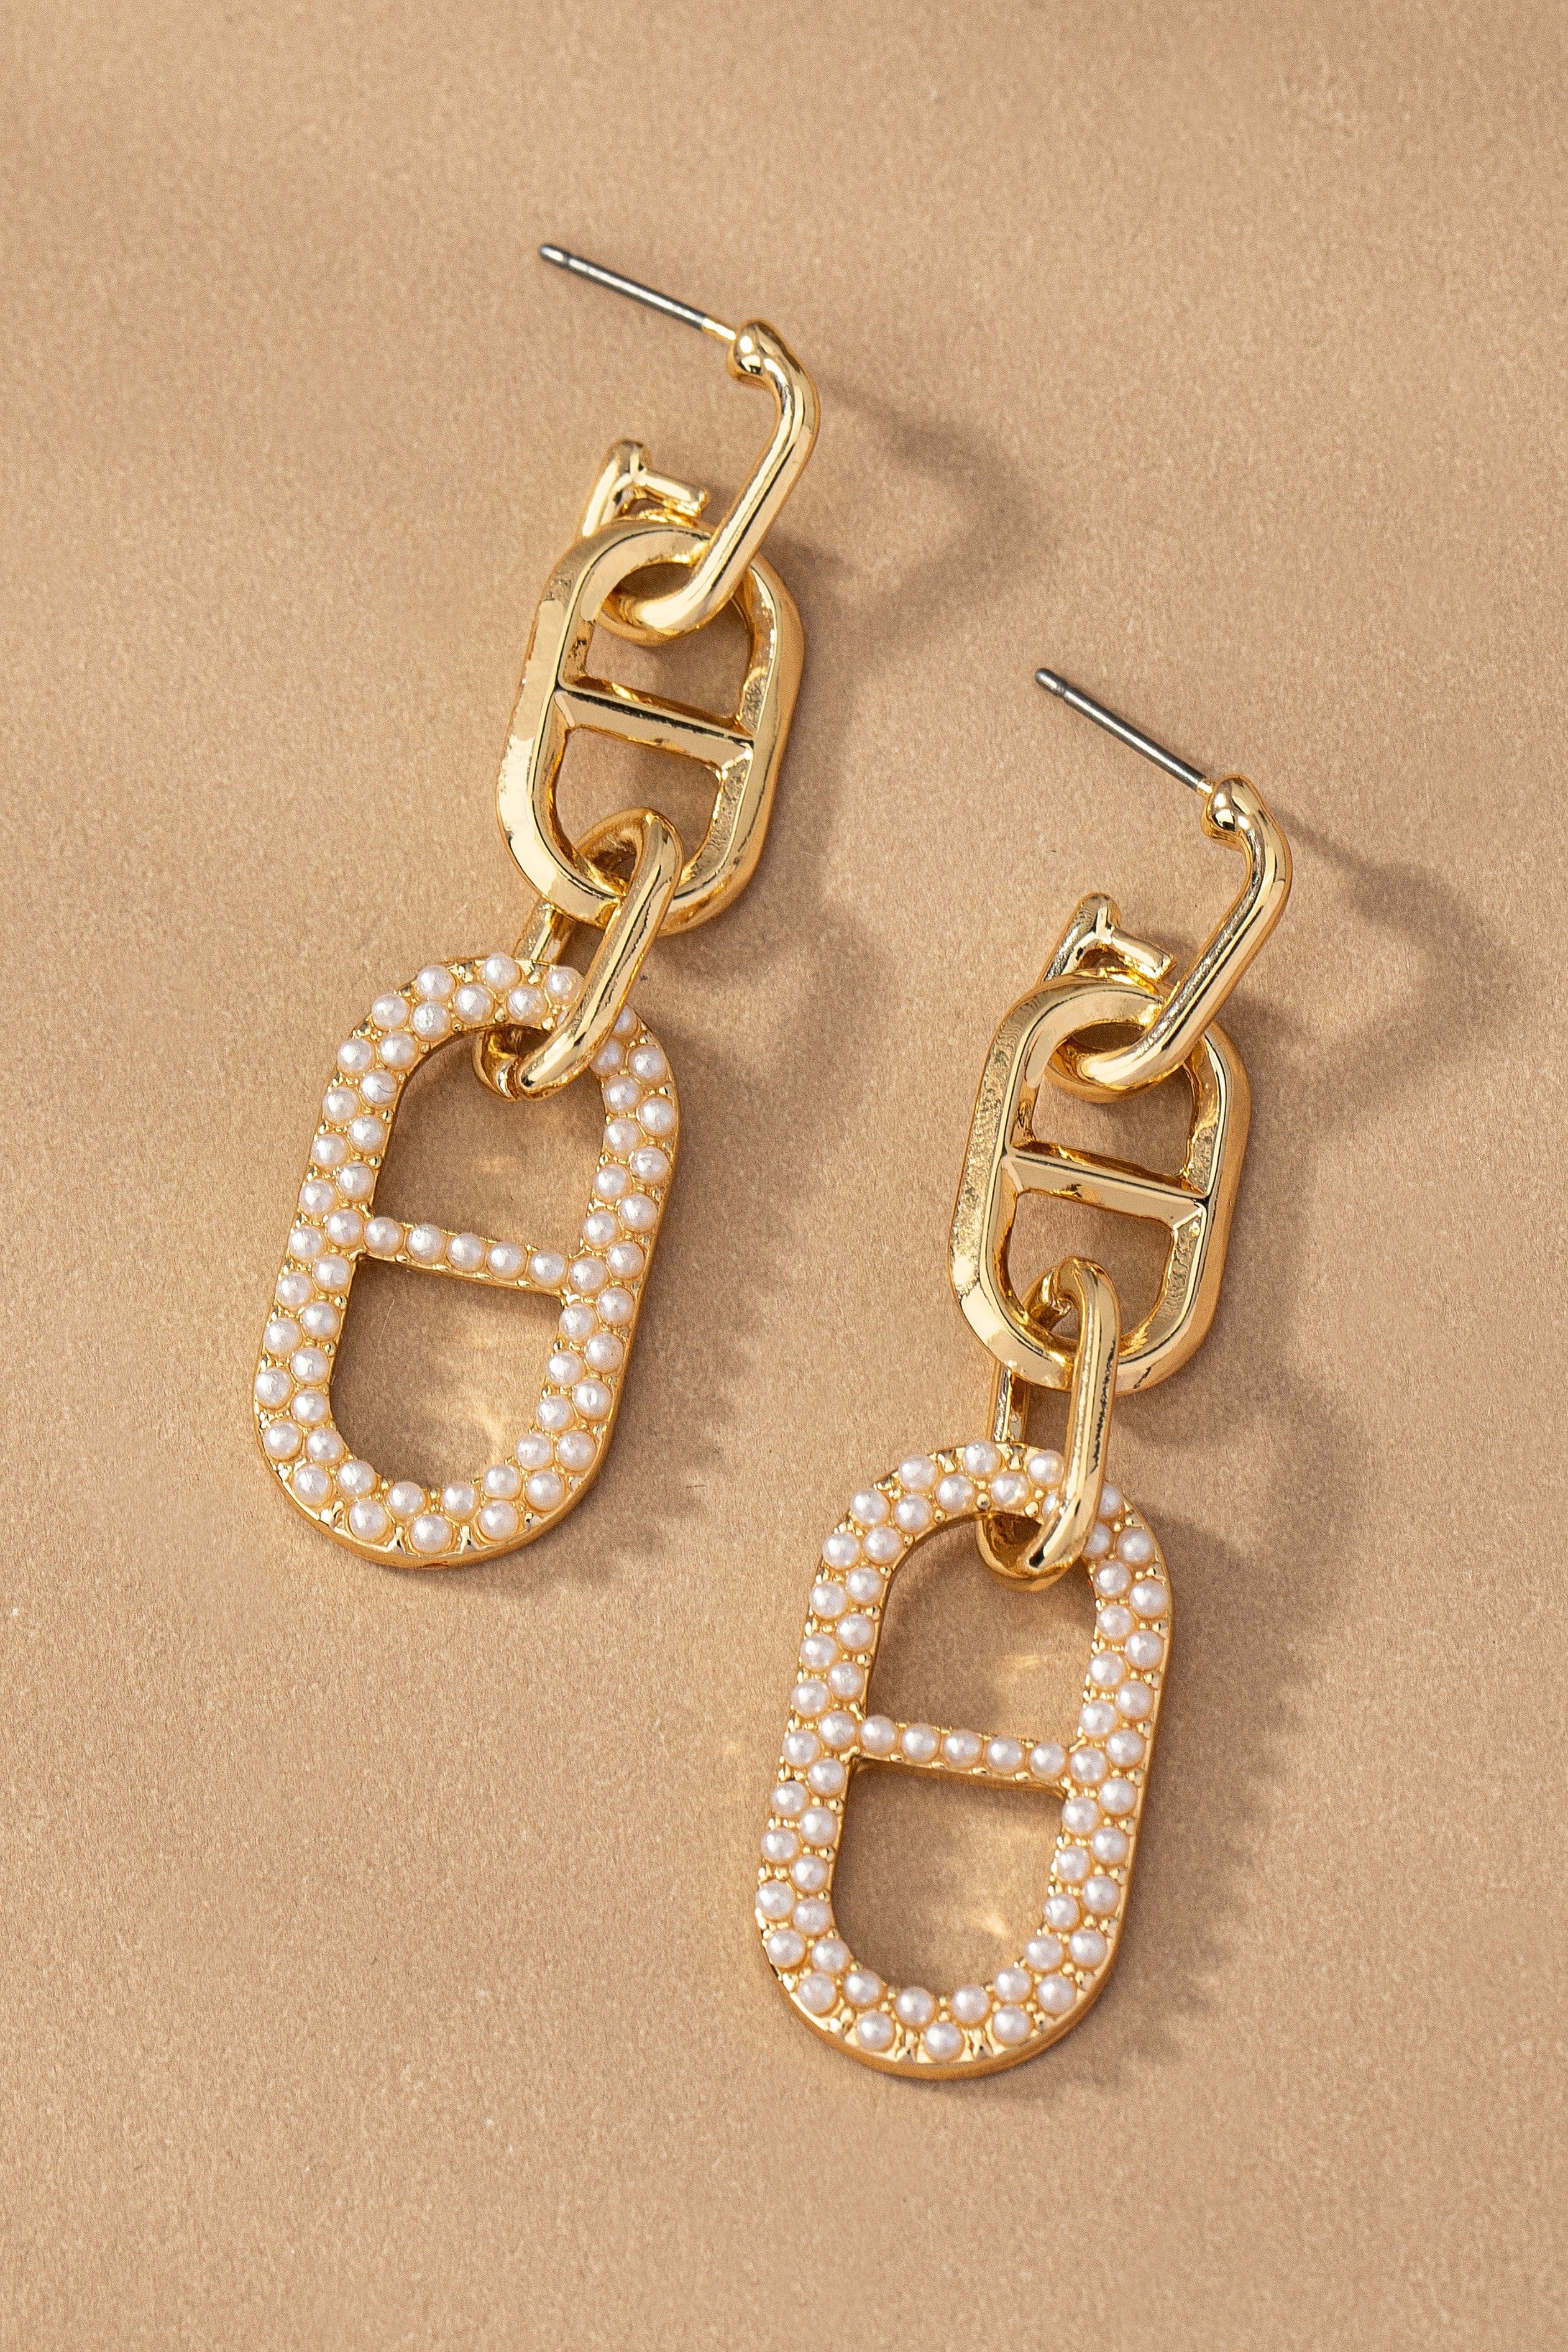 LA3accessories Jewelry - Earrings Linear Buckle Drop Earrings In Gold & Pearl 93896694